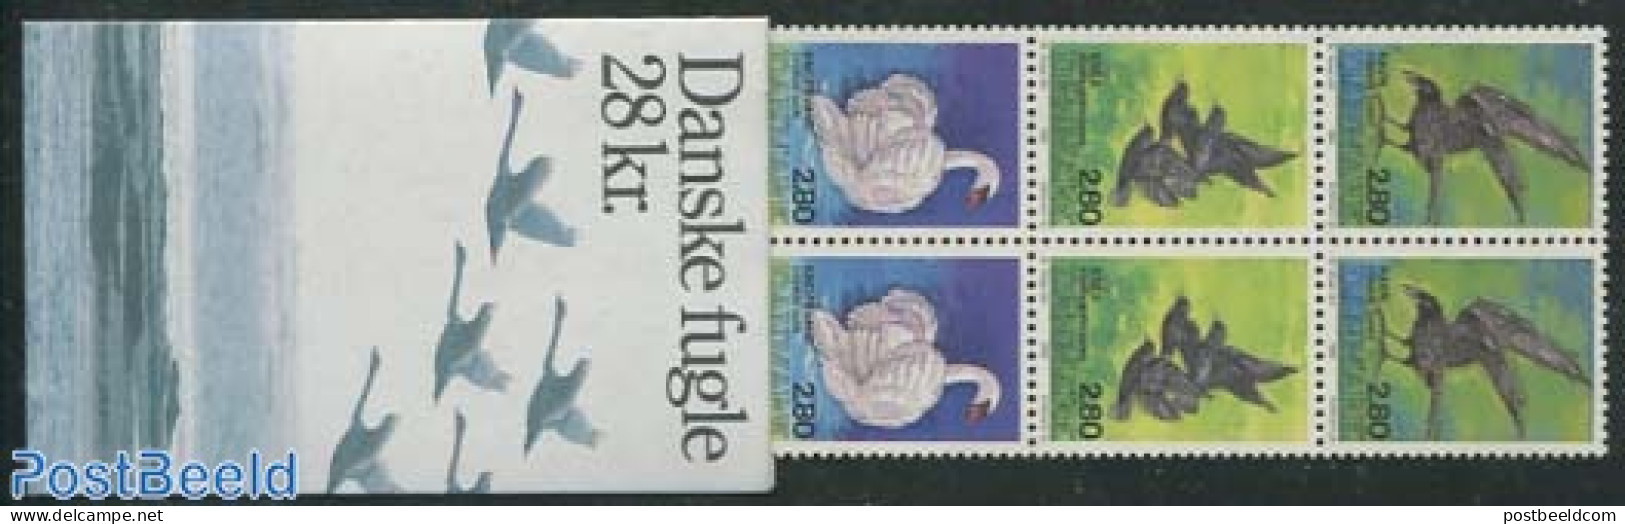 Denmark 1986 Birds Booklet, Mint NH, Nature - Birds - Stamp Booklets - Swans - Ungebraucht